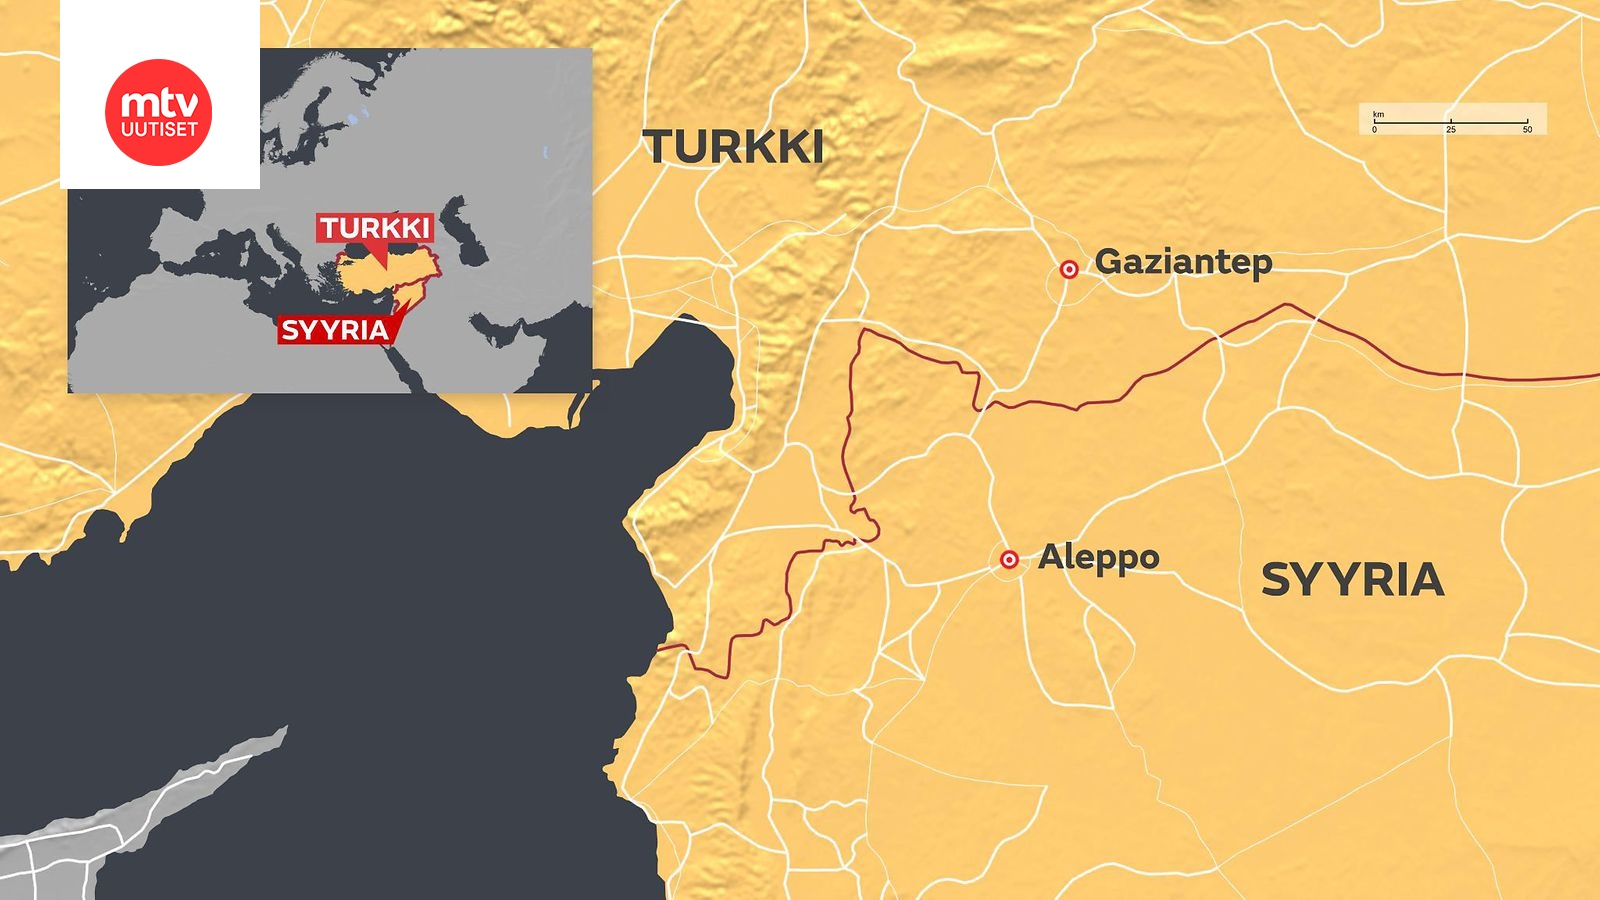 Turkki iski kurdijoukkoja vastaan Aleppon pohjoispuolella 